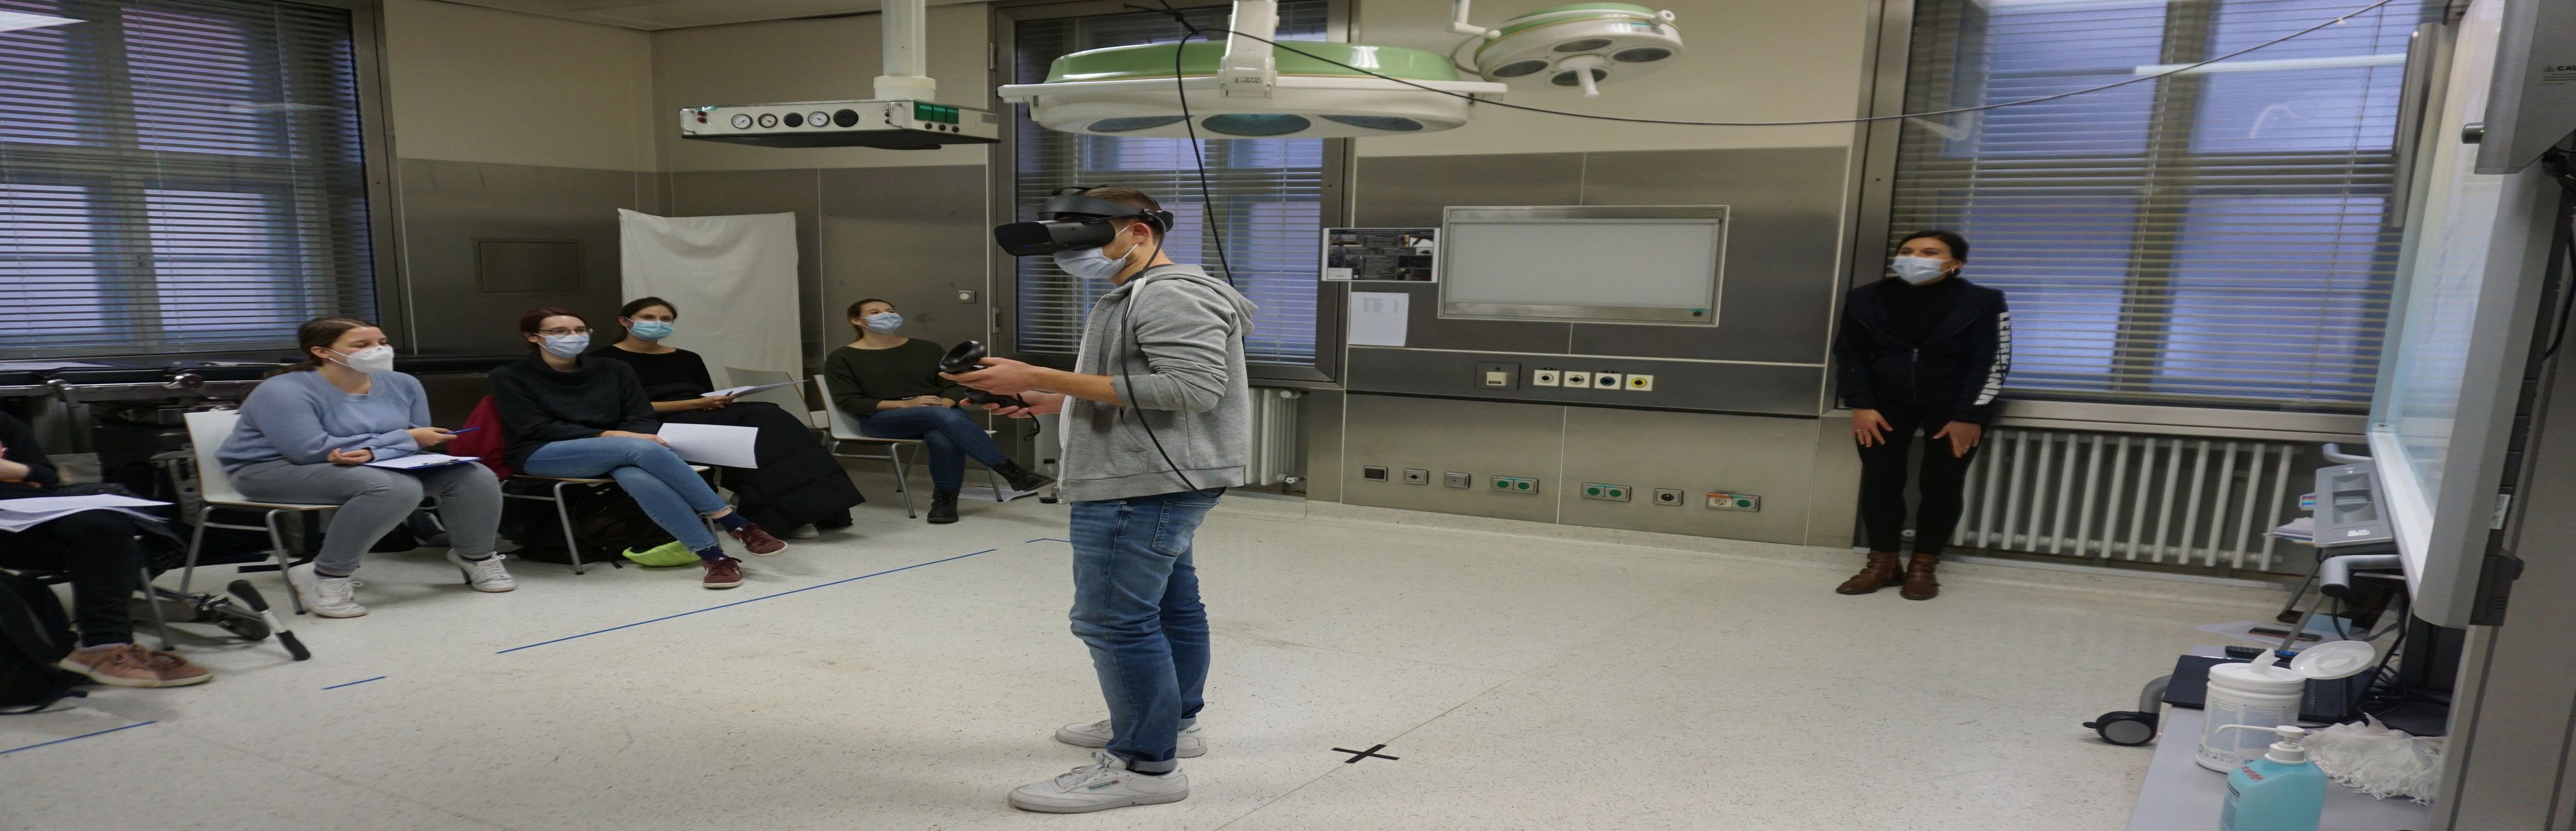 Virtual-Reality-Seminar an der Uni Würzburg mit VR-Brille. Studierende verfolgen den Fall auf einer Leinwand mit.